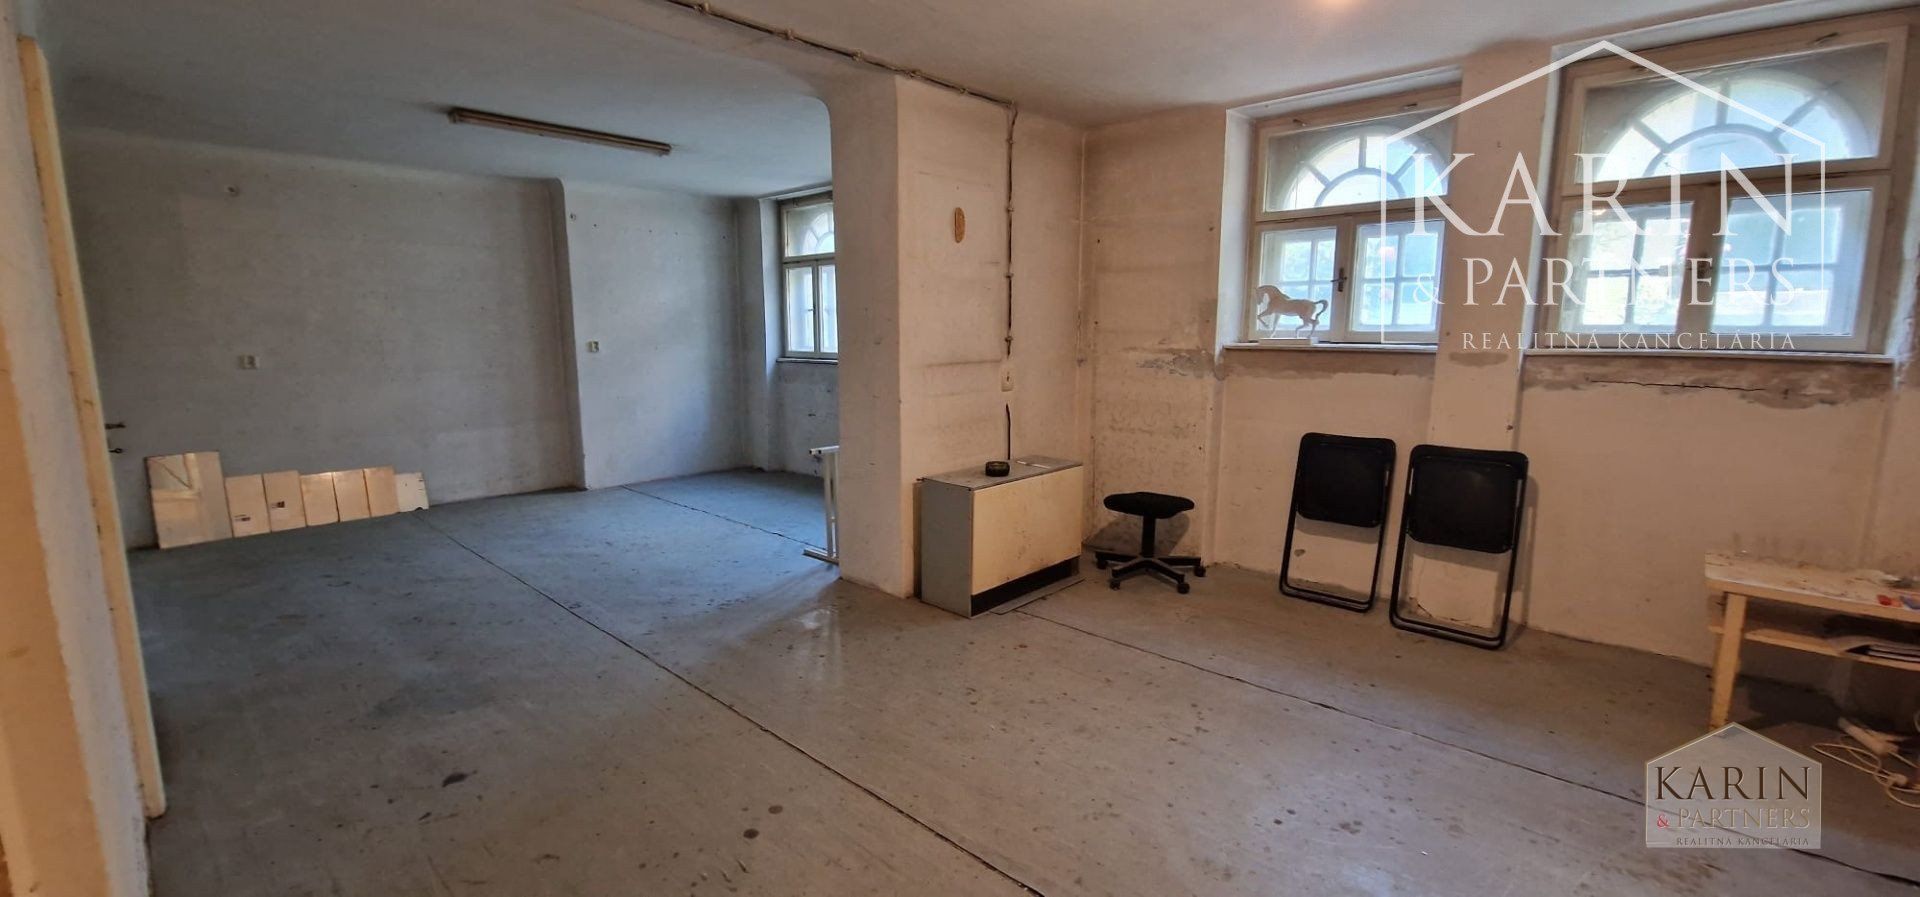 Štýlový  3 izbový priestor na bývanie alebo podnikanie na lukratívnej adrese Bratislavy – Palisády, Godrova ul.